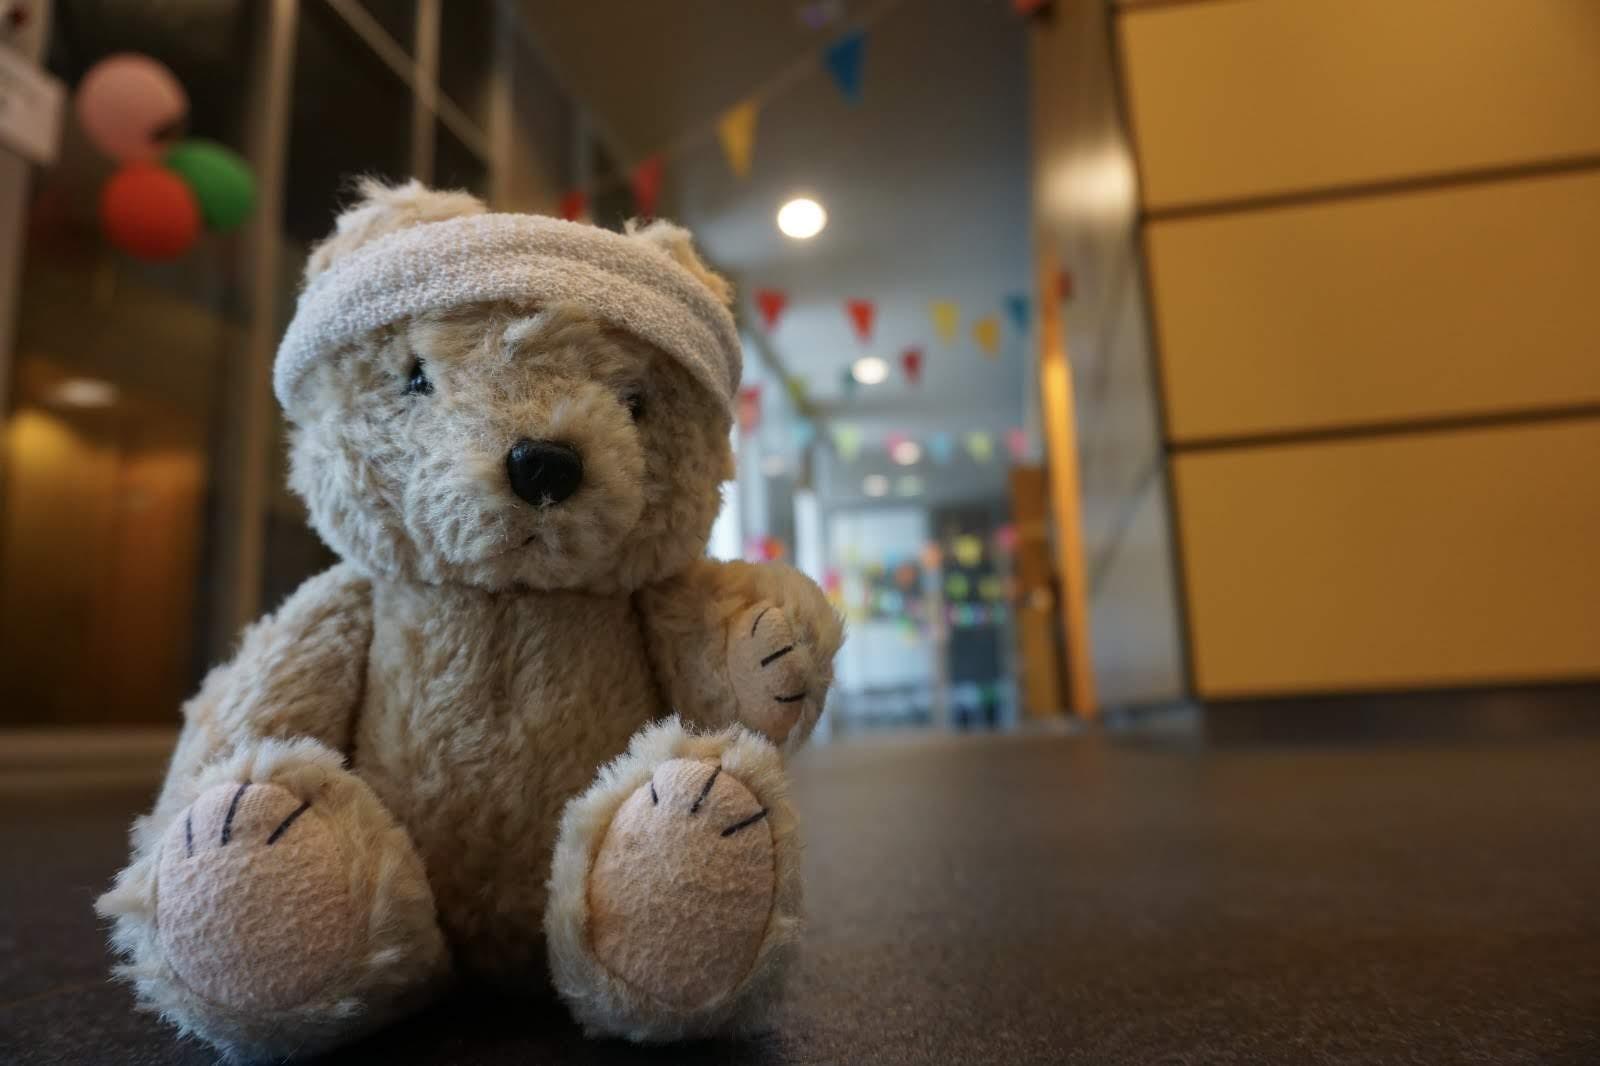 Mini-Teddy Bear Hospital